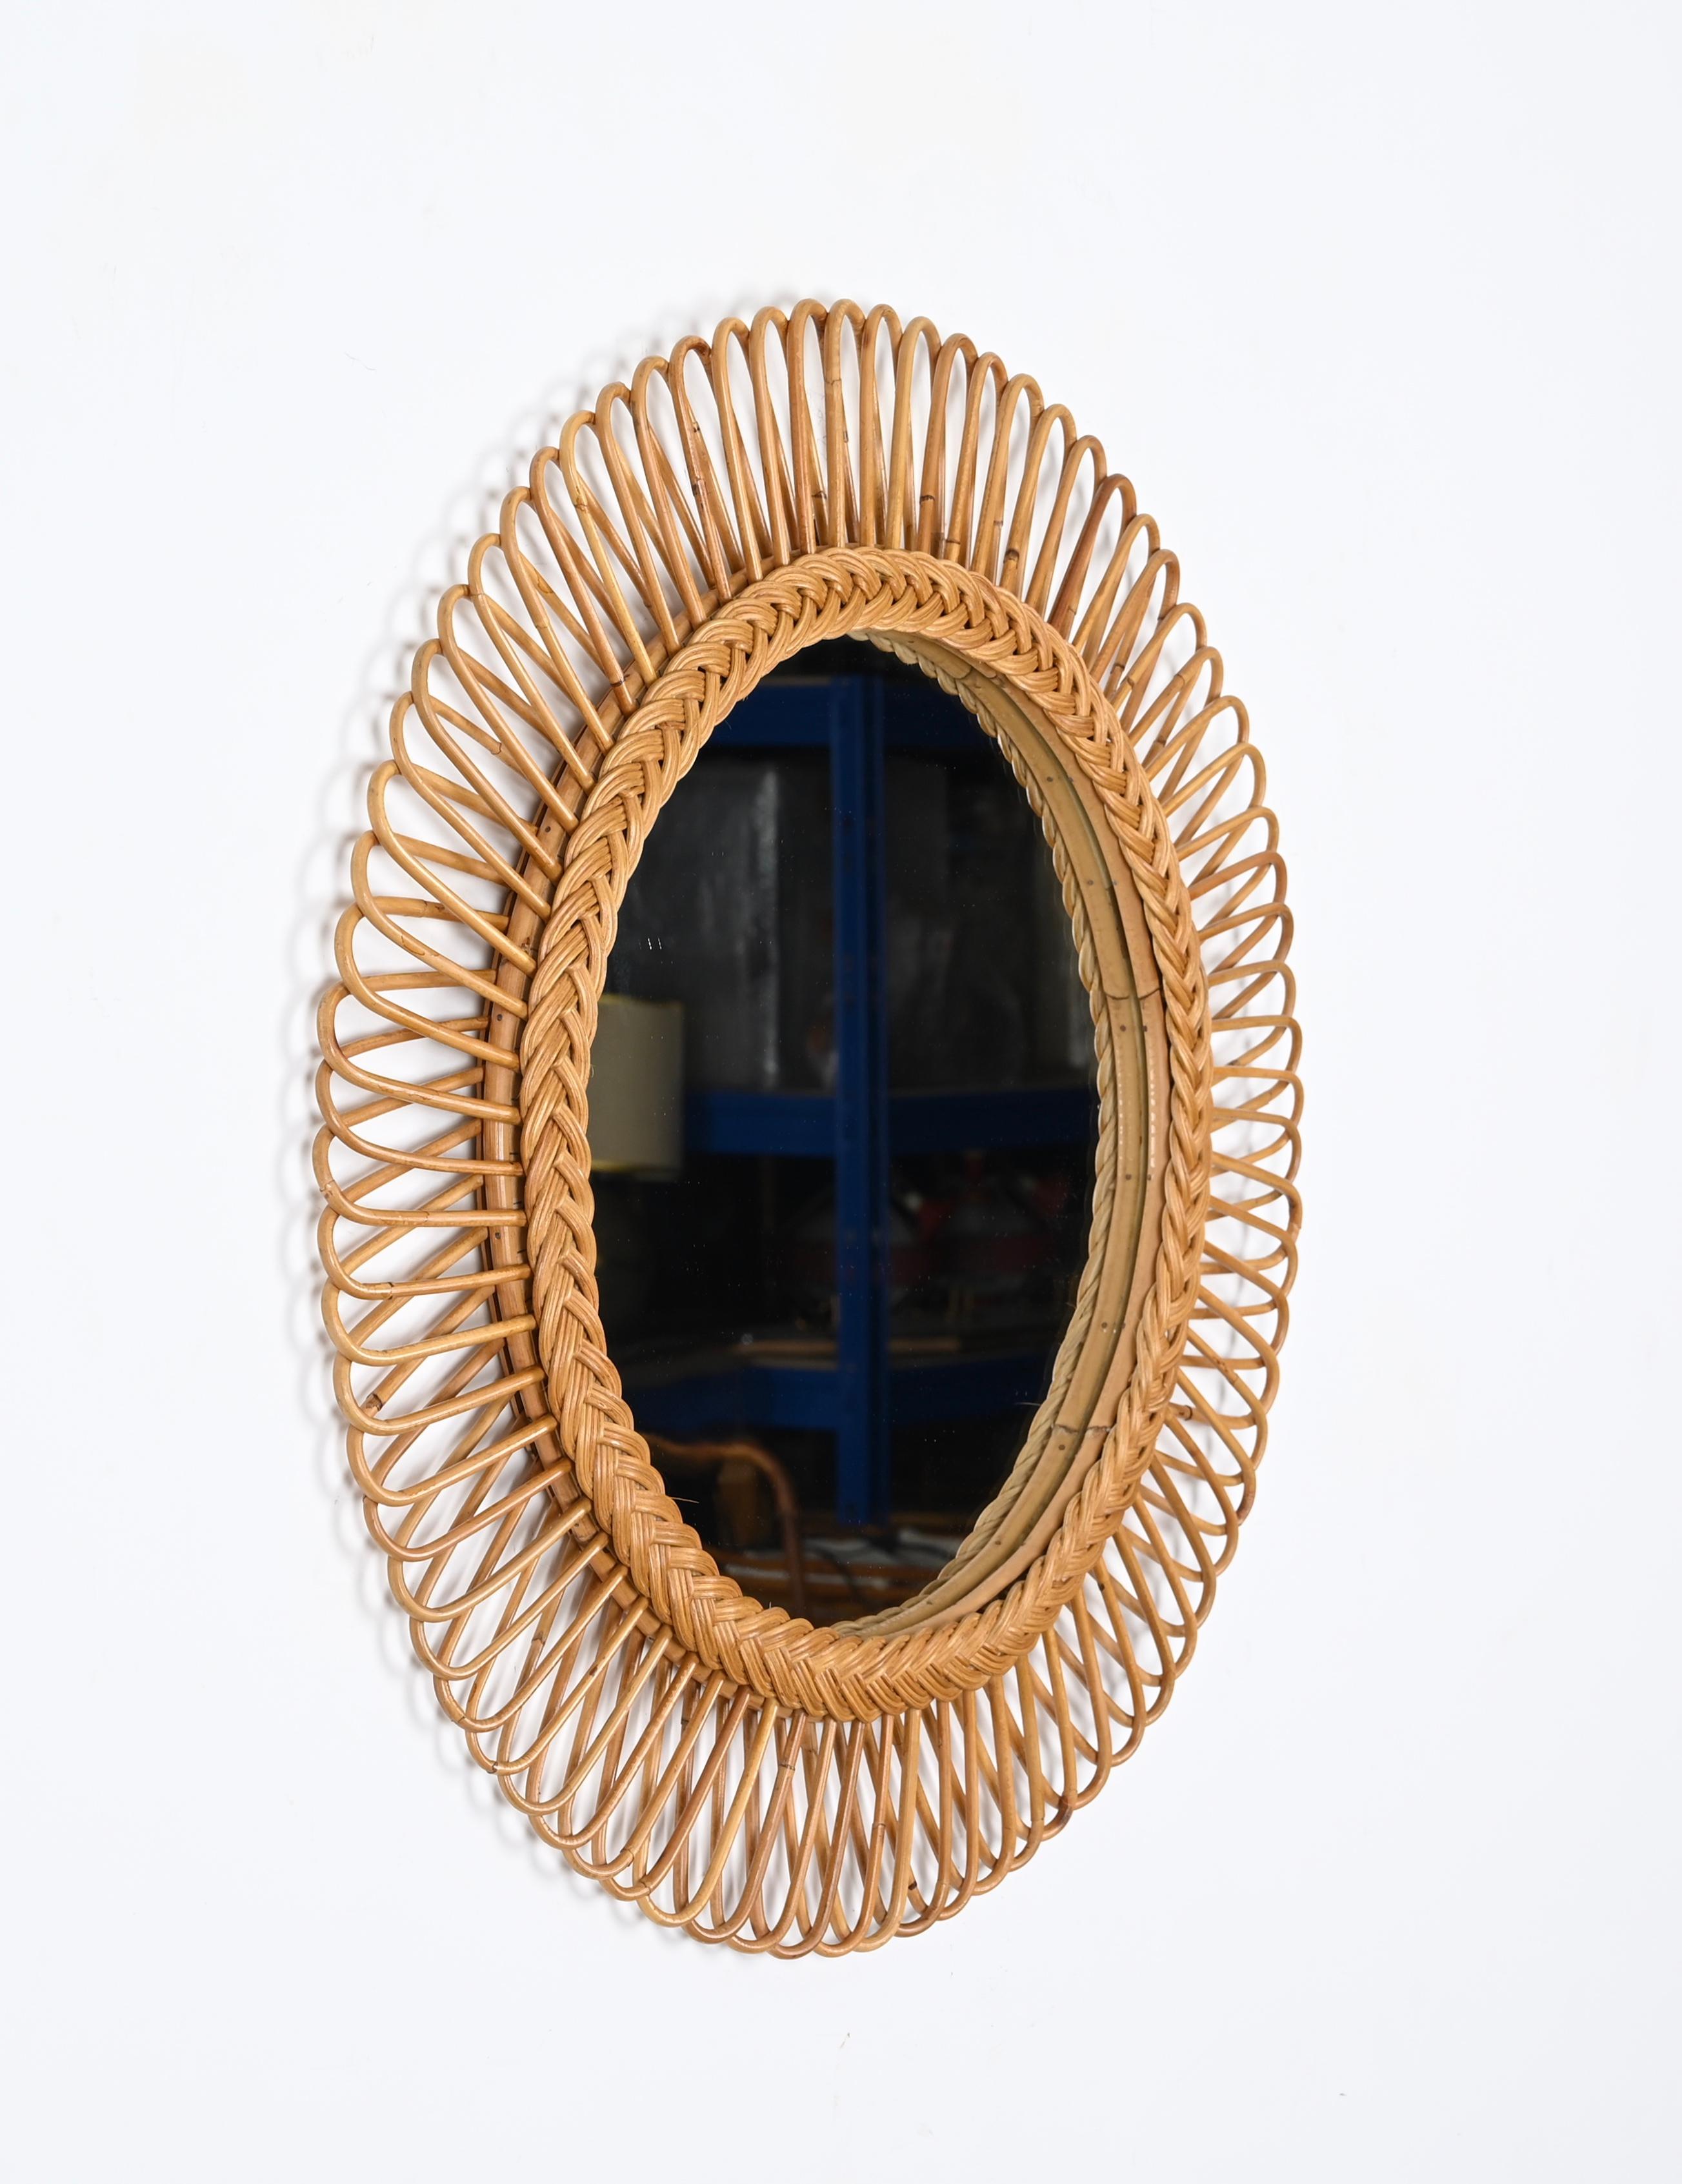 Mid-Century Rattan, Bamboo and Wicker Italian Round Mirror, Franco Albini 1970s For Sale 5